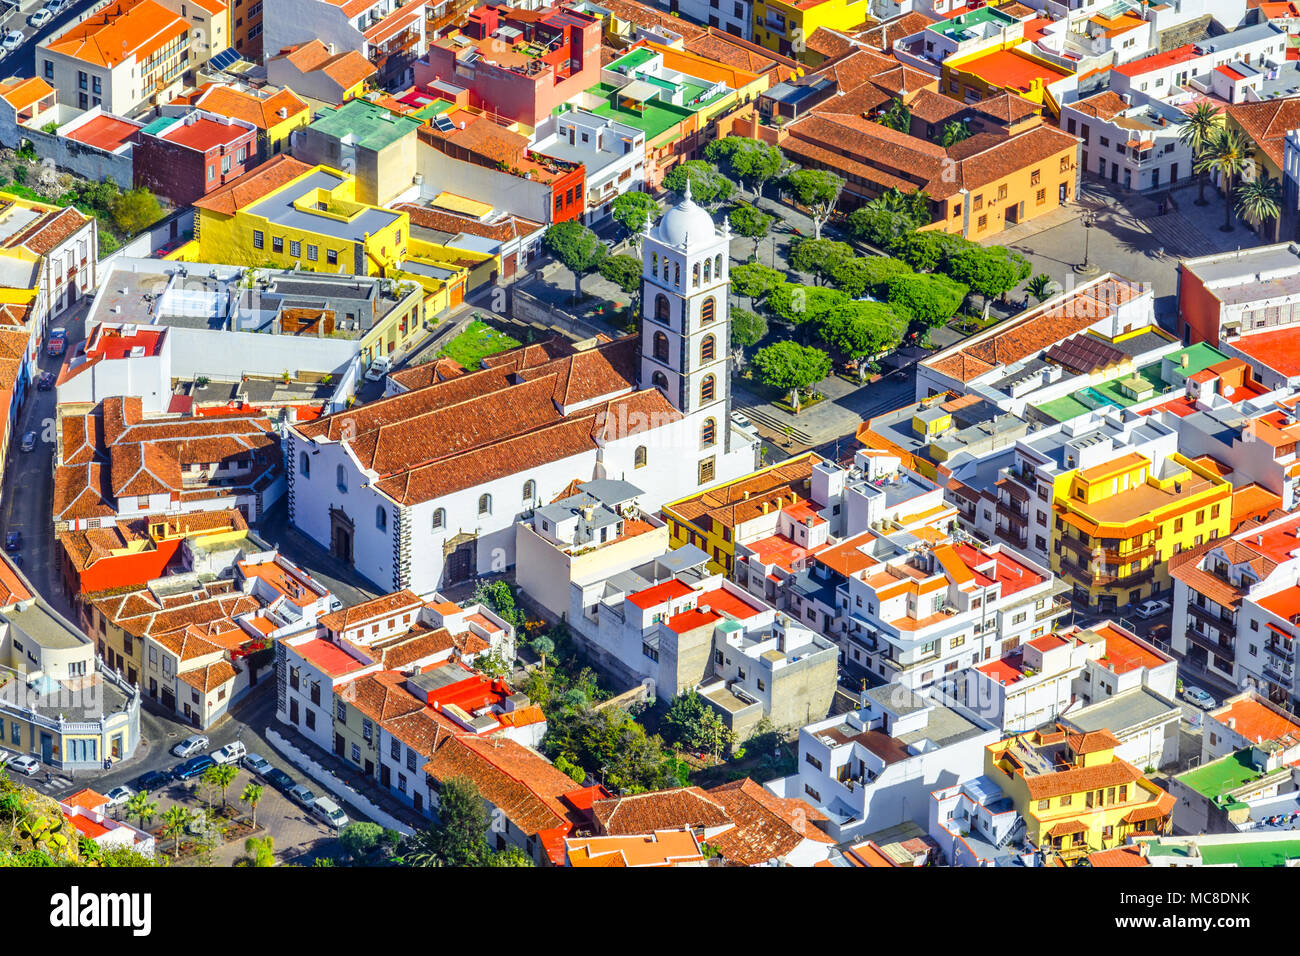 Garachico, Teneriffa, Kanarische Inseln, Spanien: Überblick über die bunte und schöne Stadt Garachico und die Kirche von Santa Ana. Stockfoto